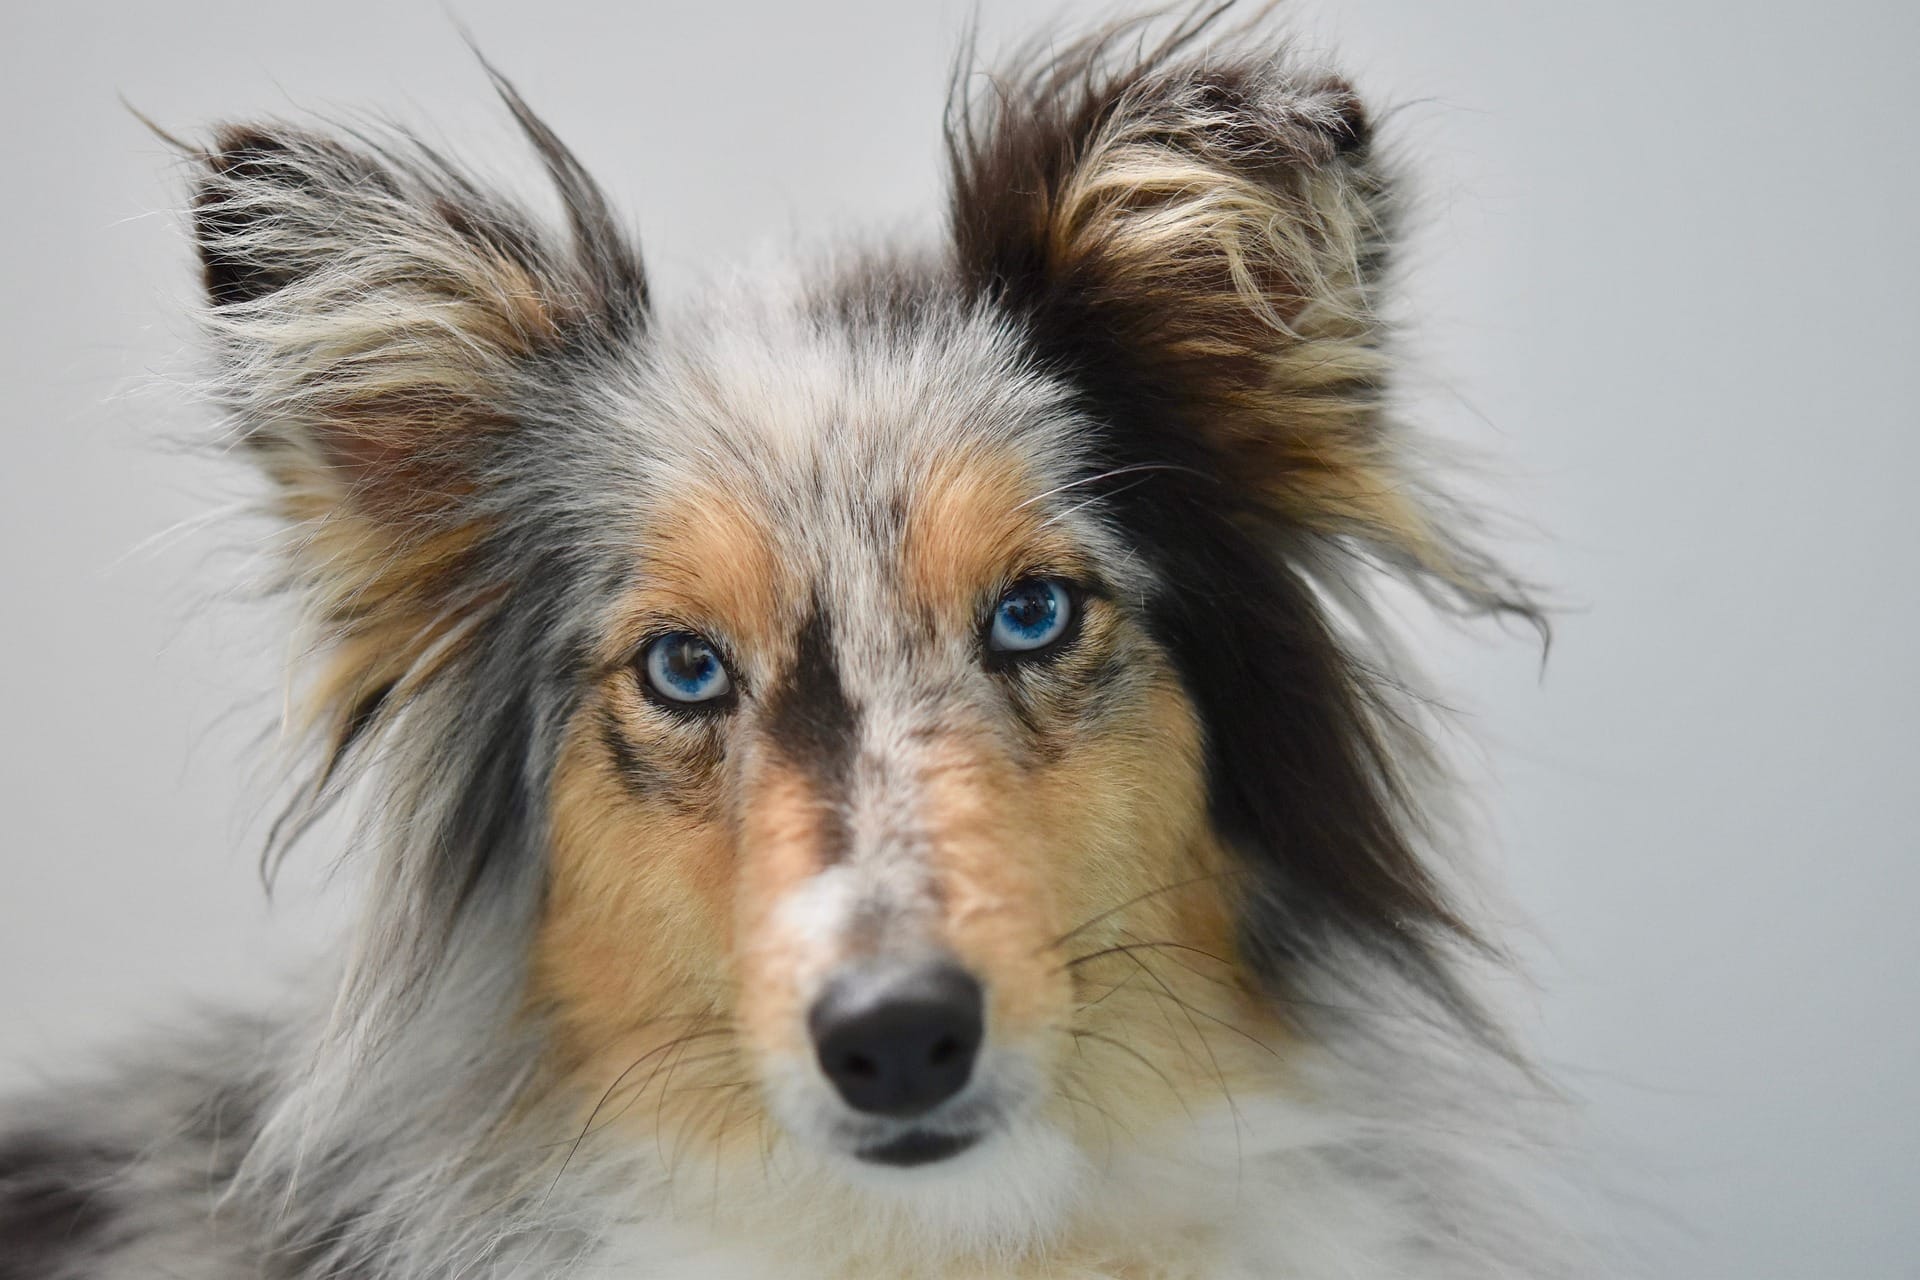 dogs with blue eyes , dog adoption , bonevoyagedogrescue